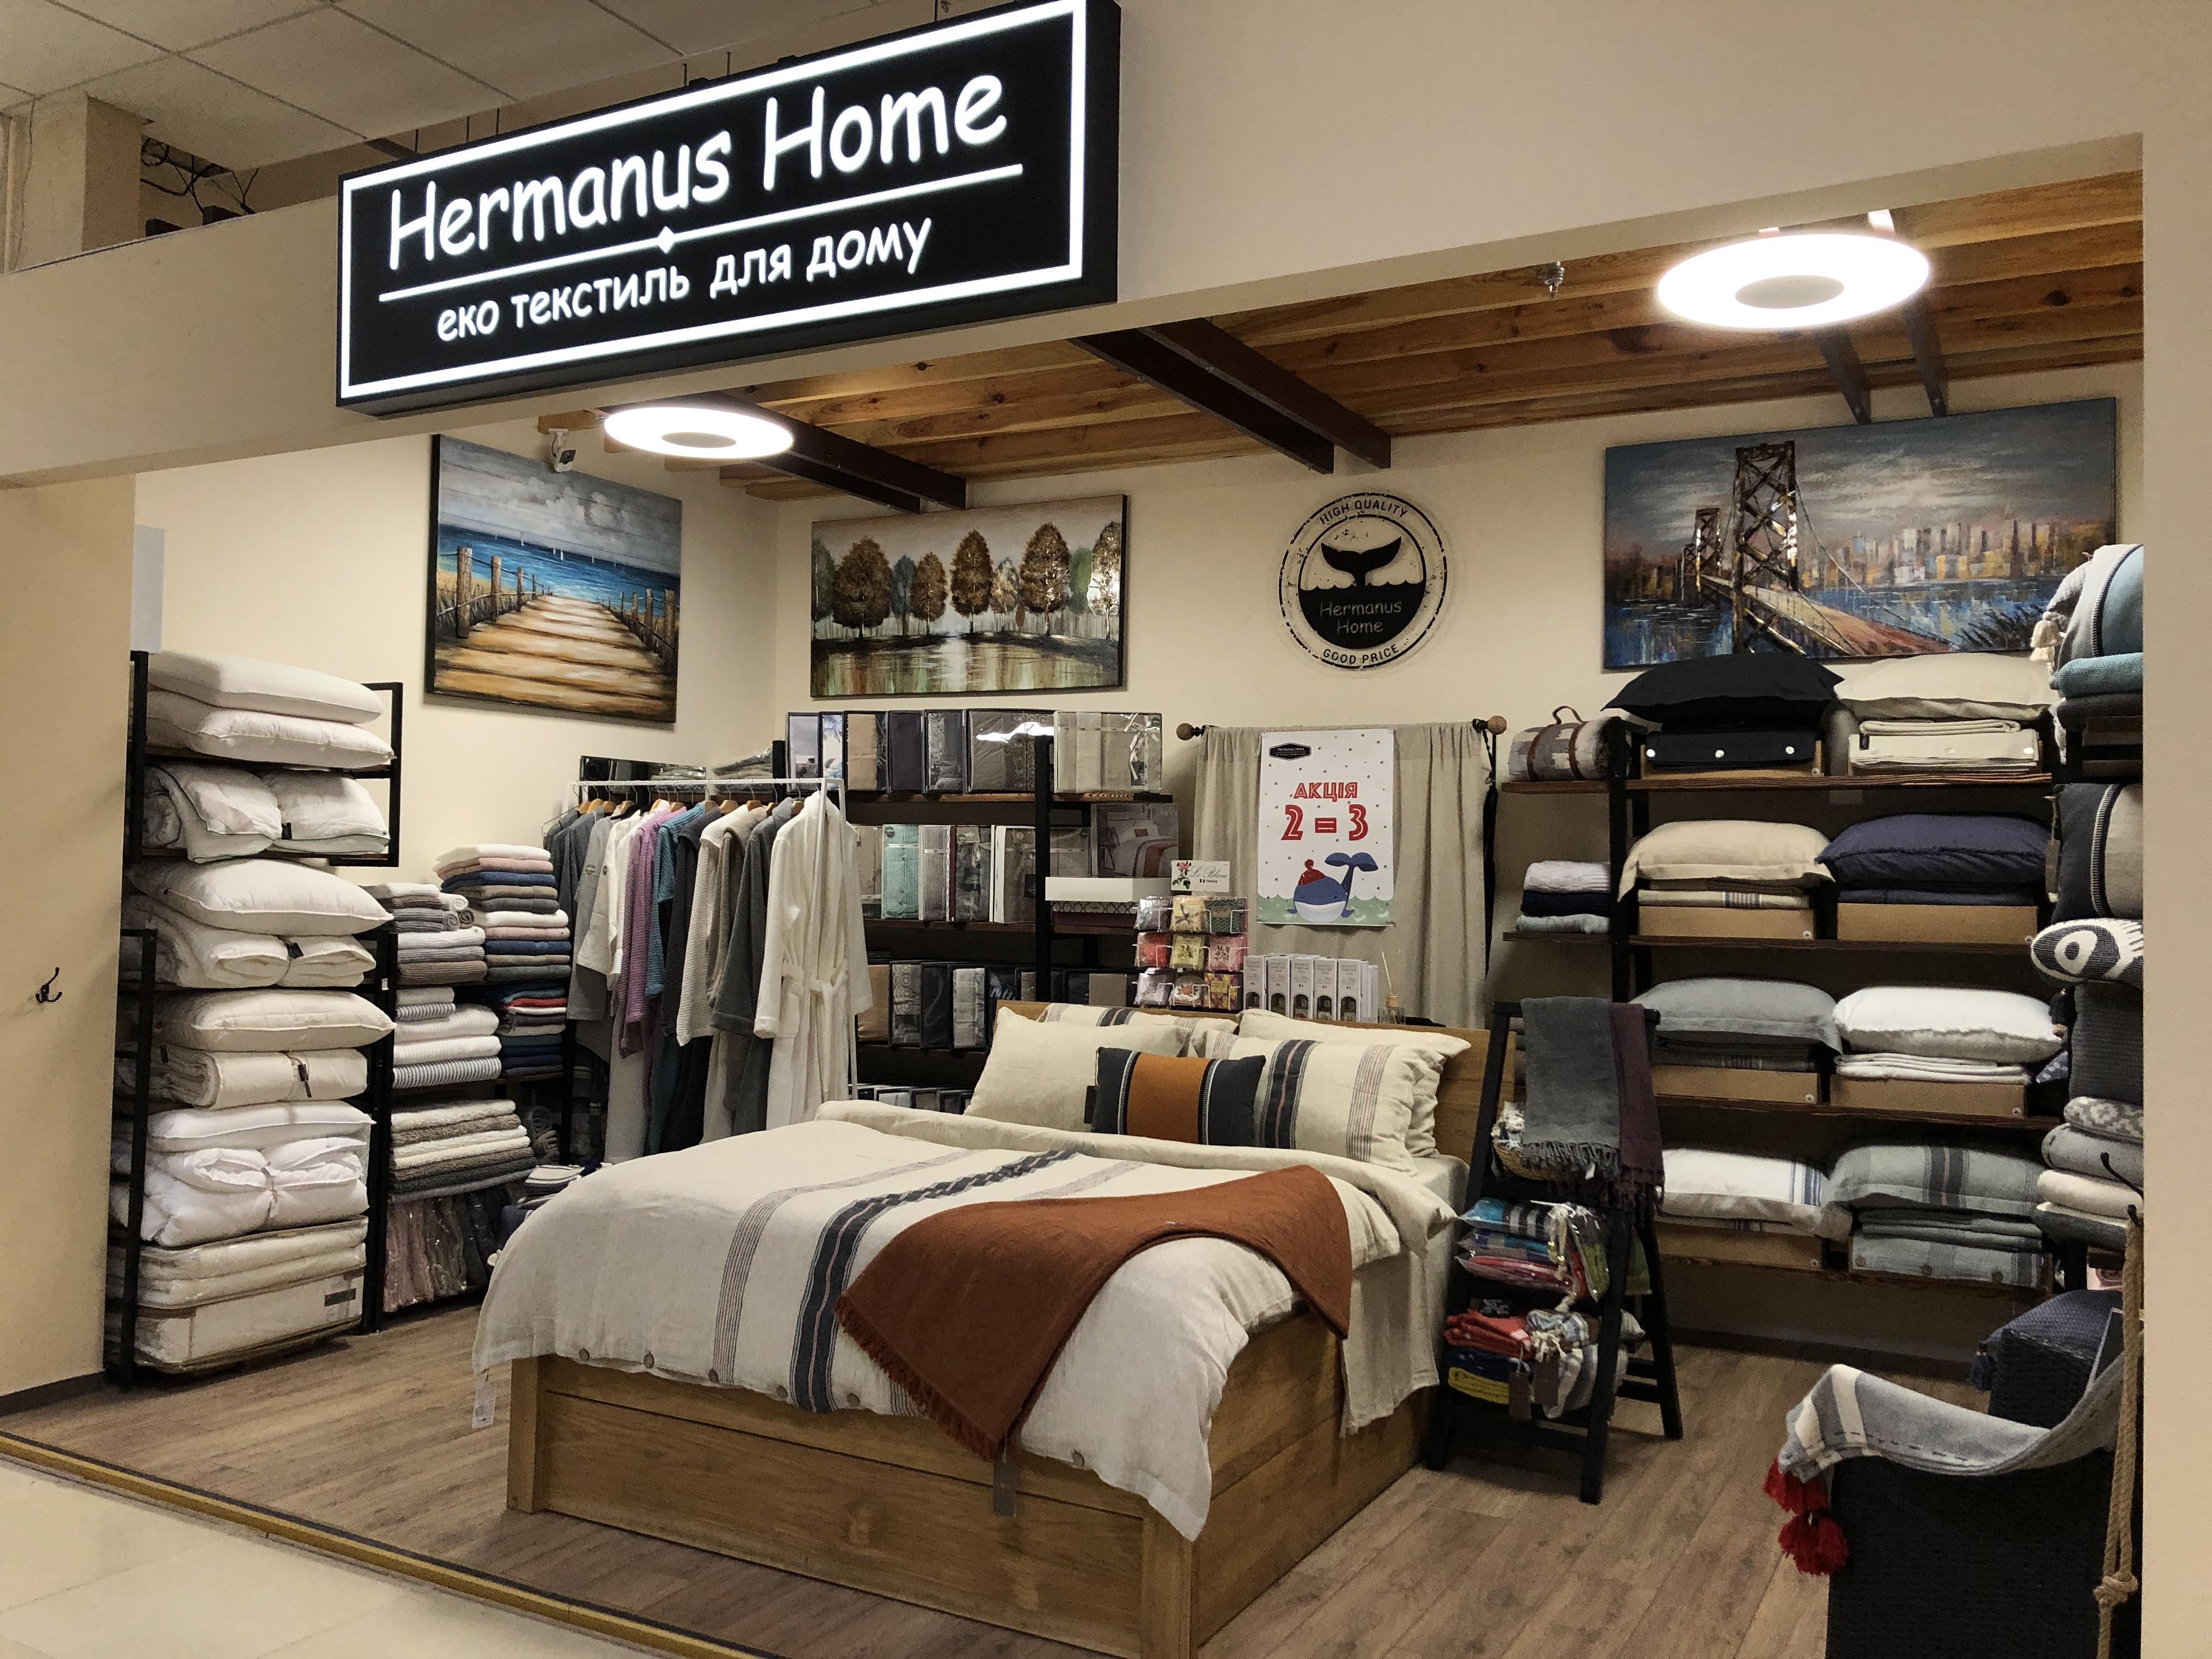 Hermanus Home